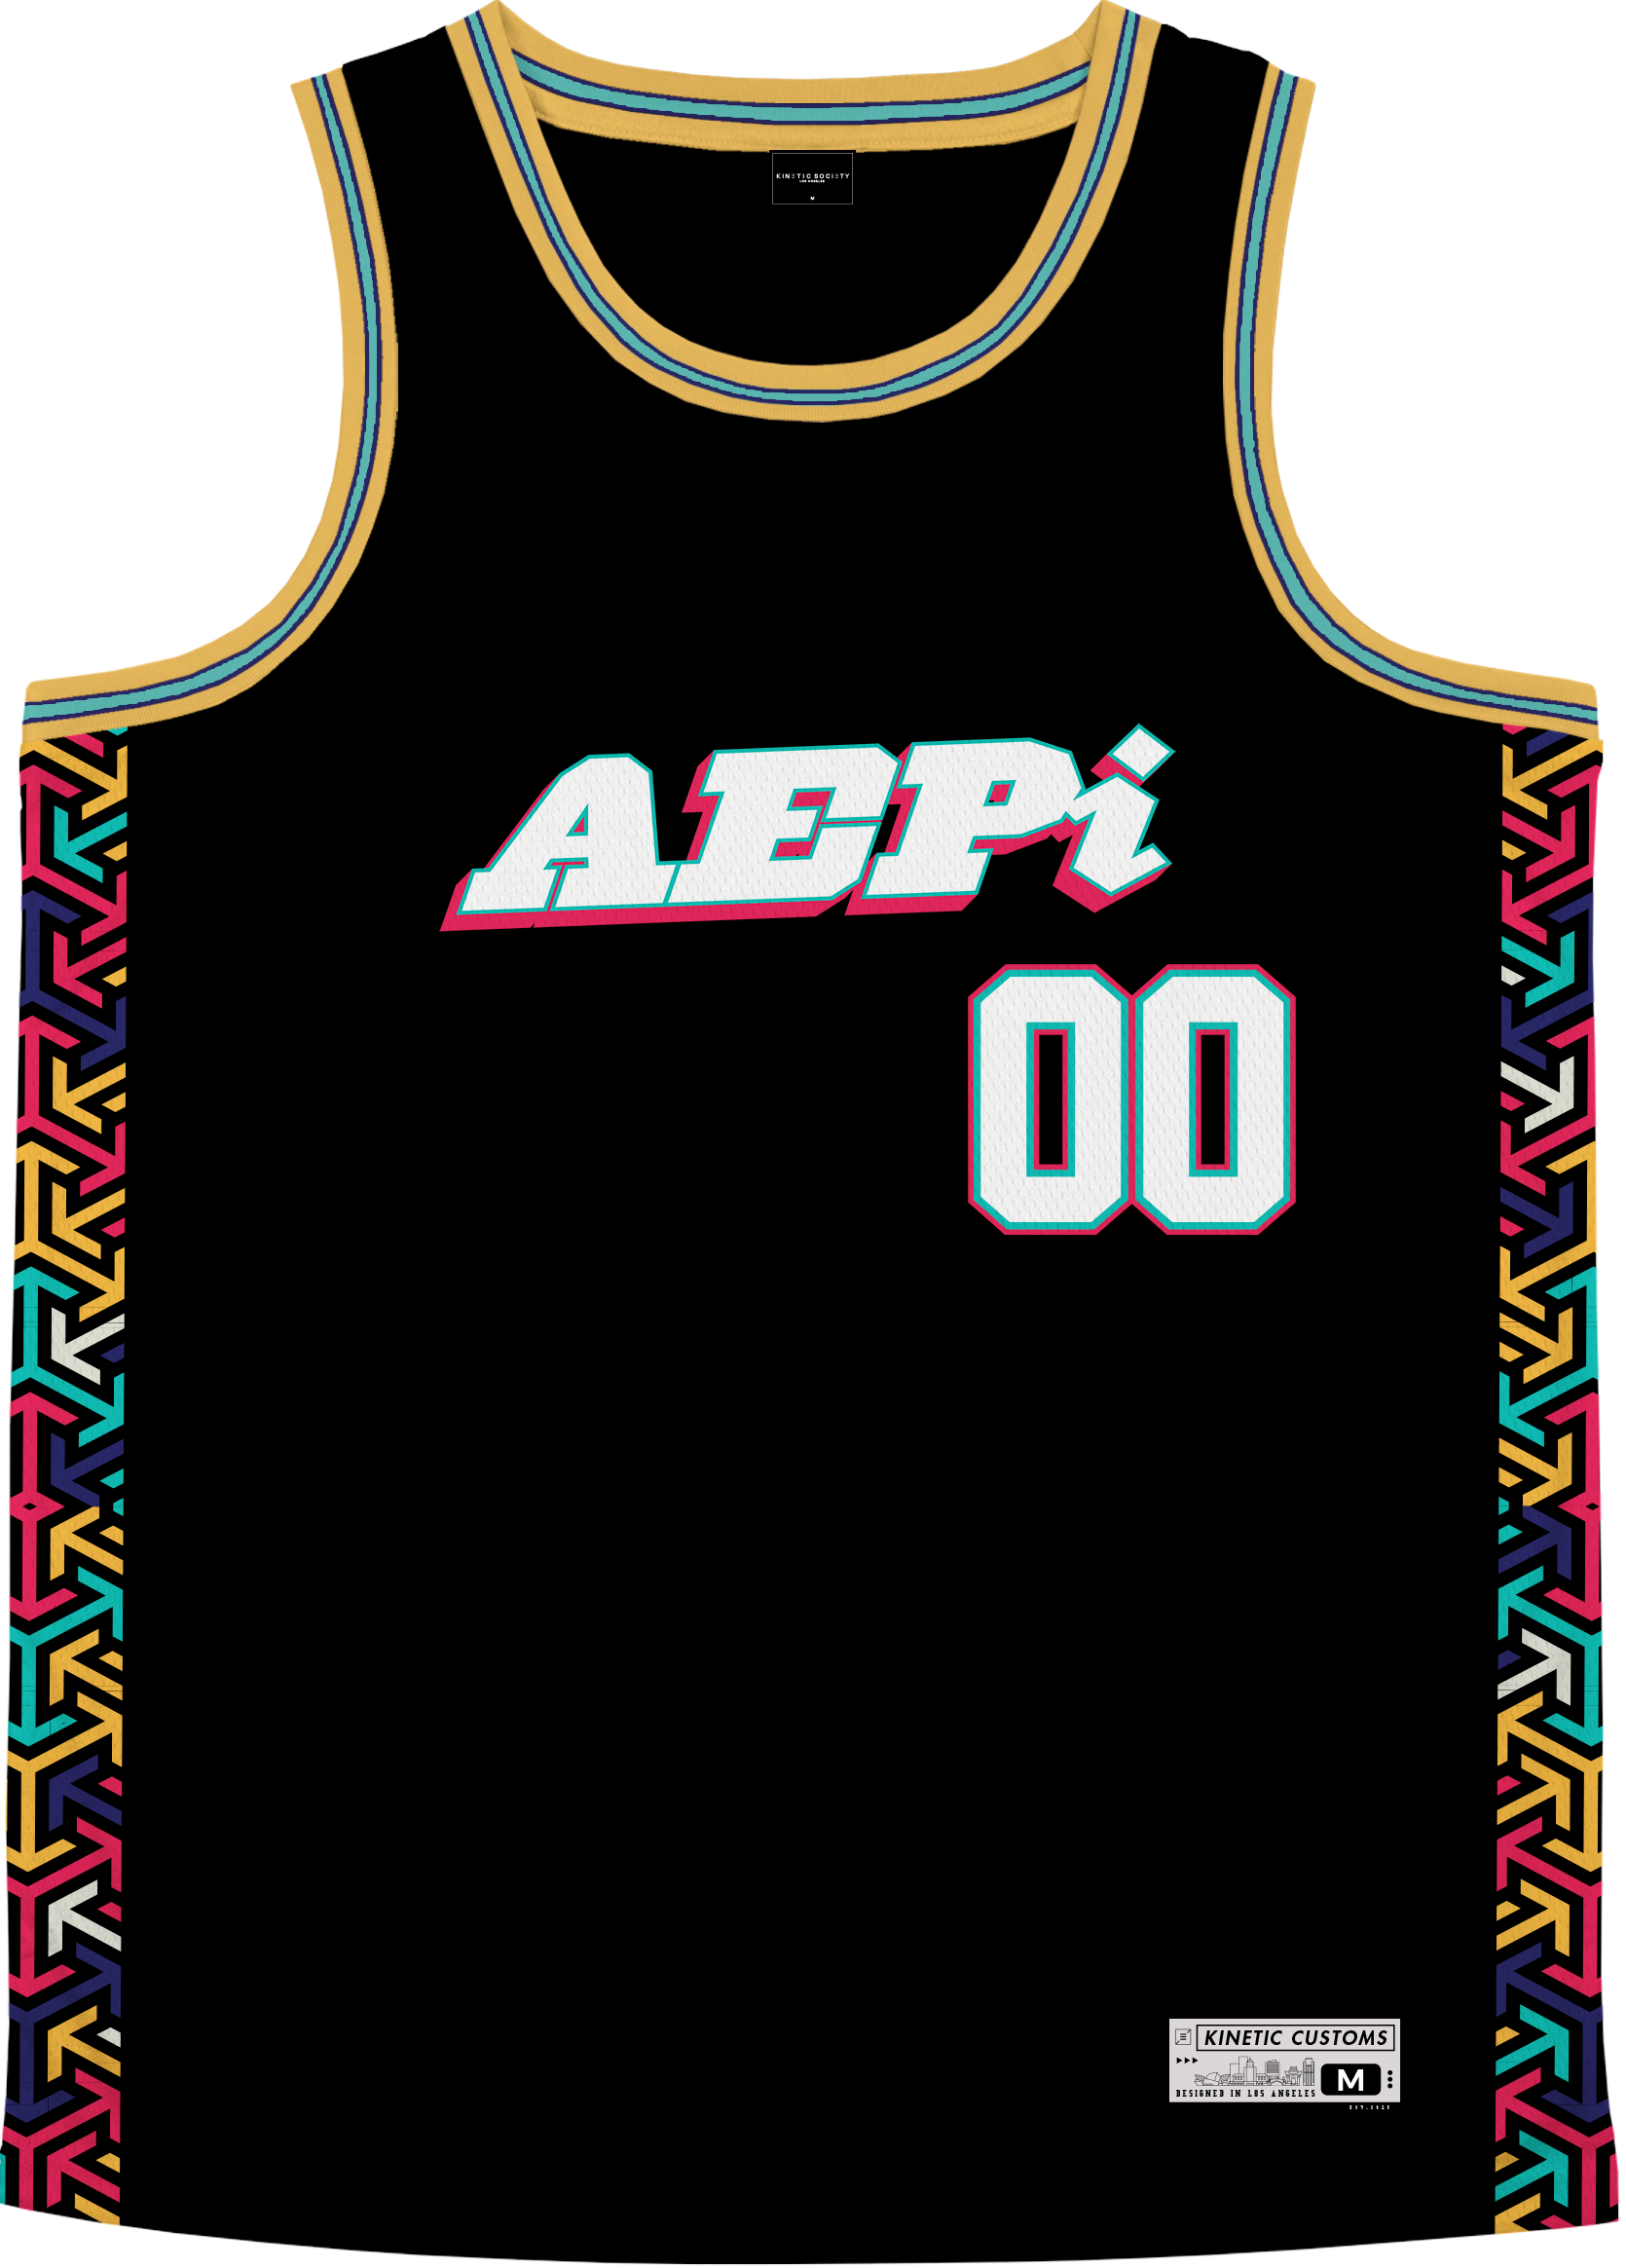 ALPHA EPSILON PI - Cubic Arrow Basketball Jersey